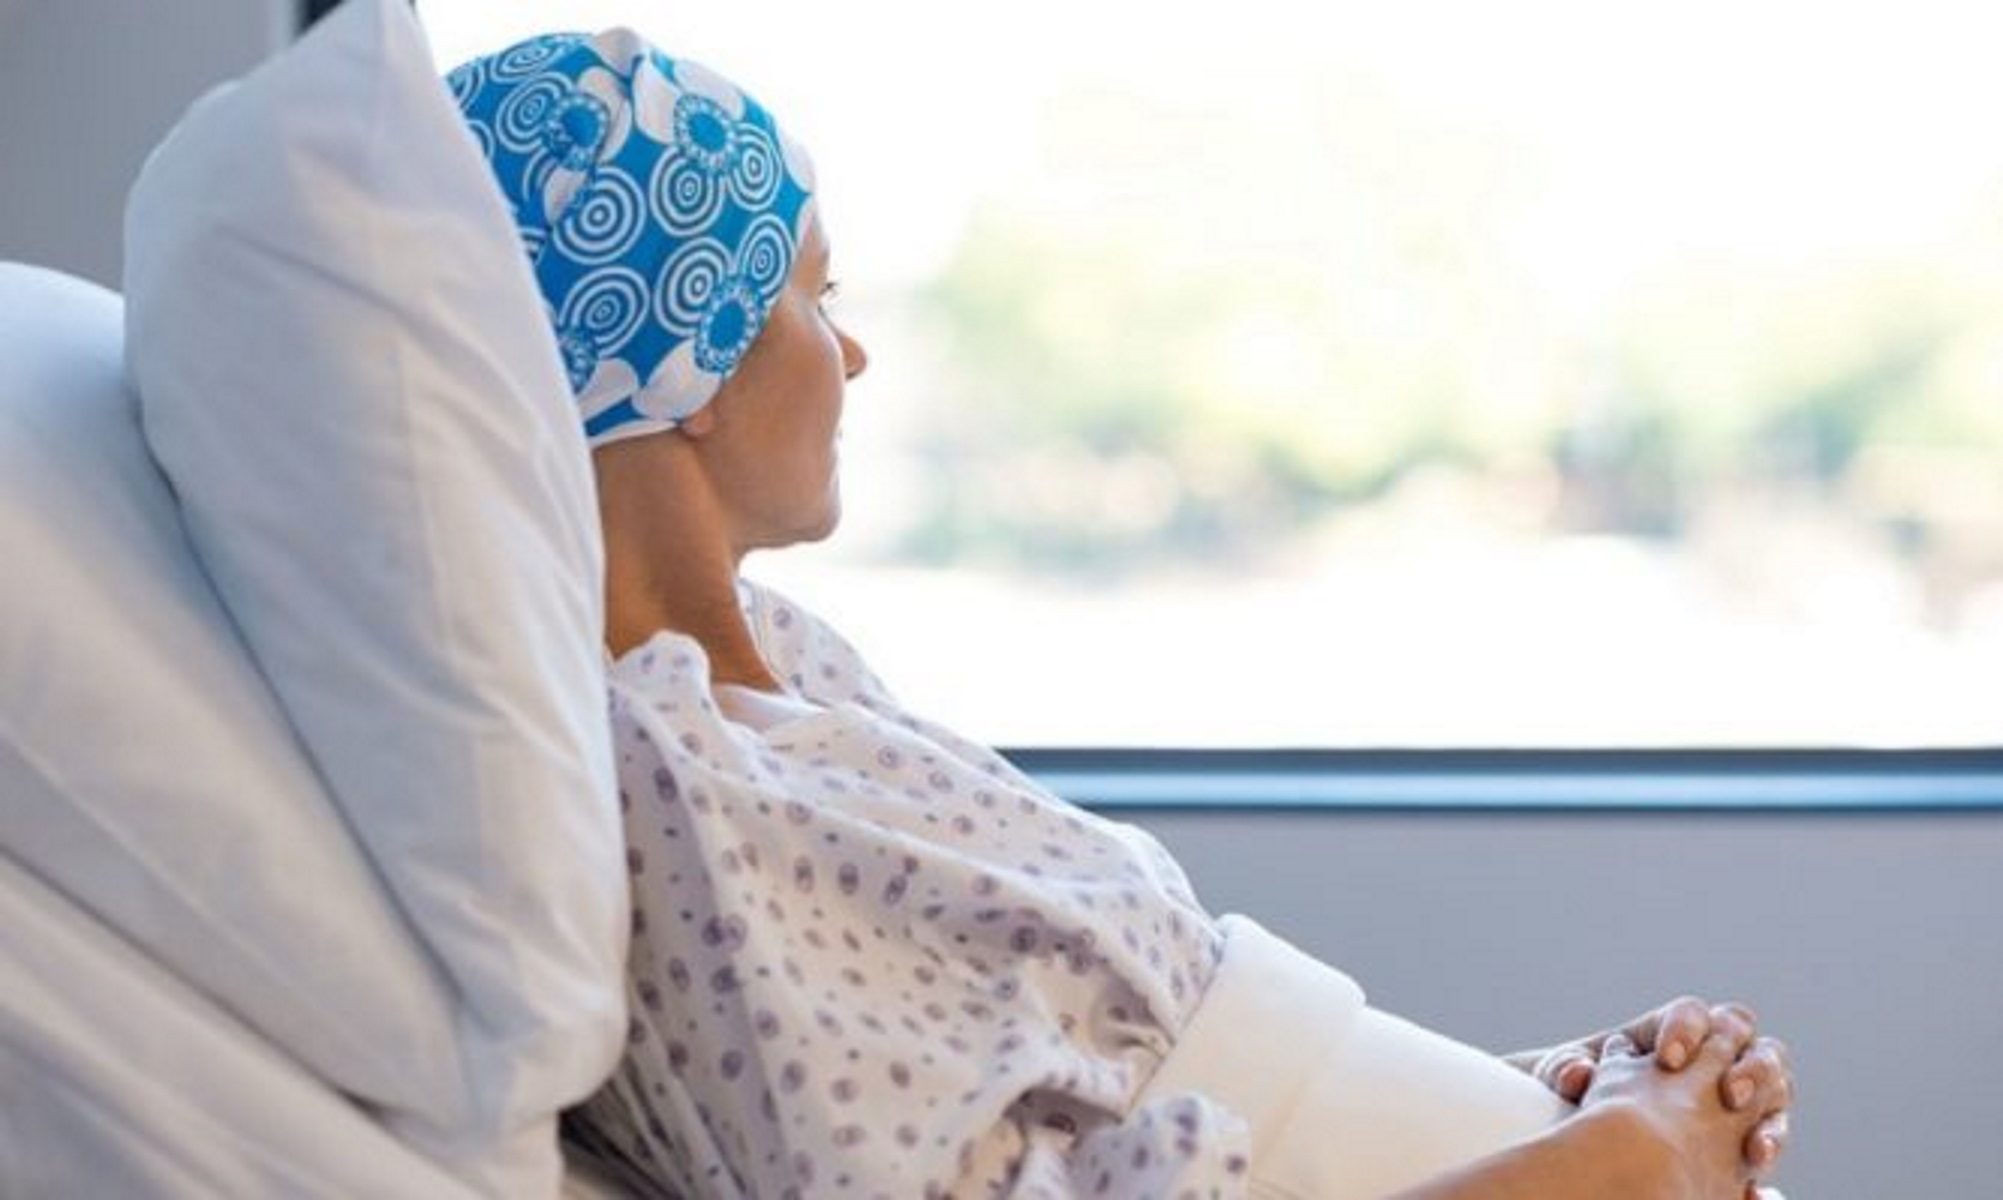 Ογκολόγος καταγγέλλει τον ΕΟΠΥΥ για καθυστερήσεις που οδήγησαν καρκινοπαθή στον θάνατο